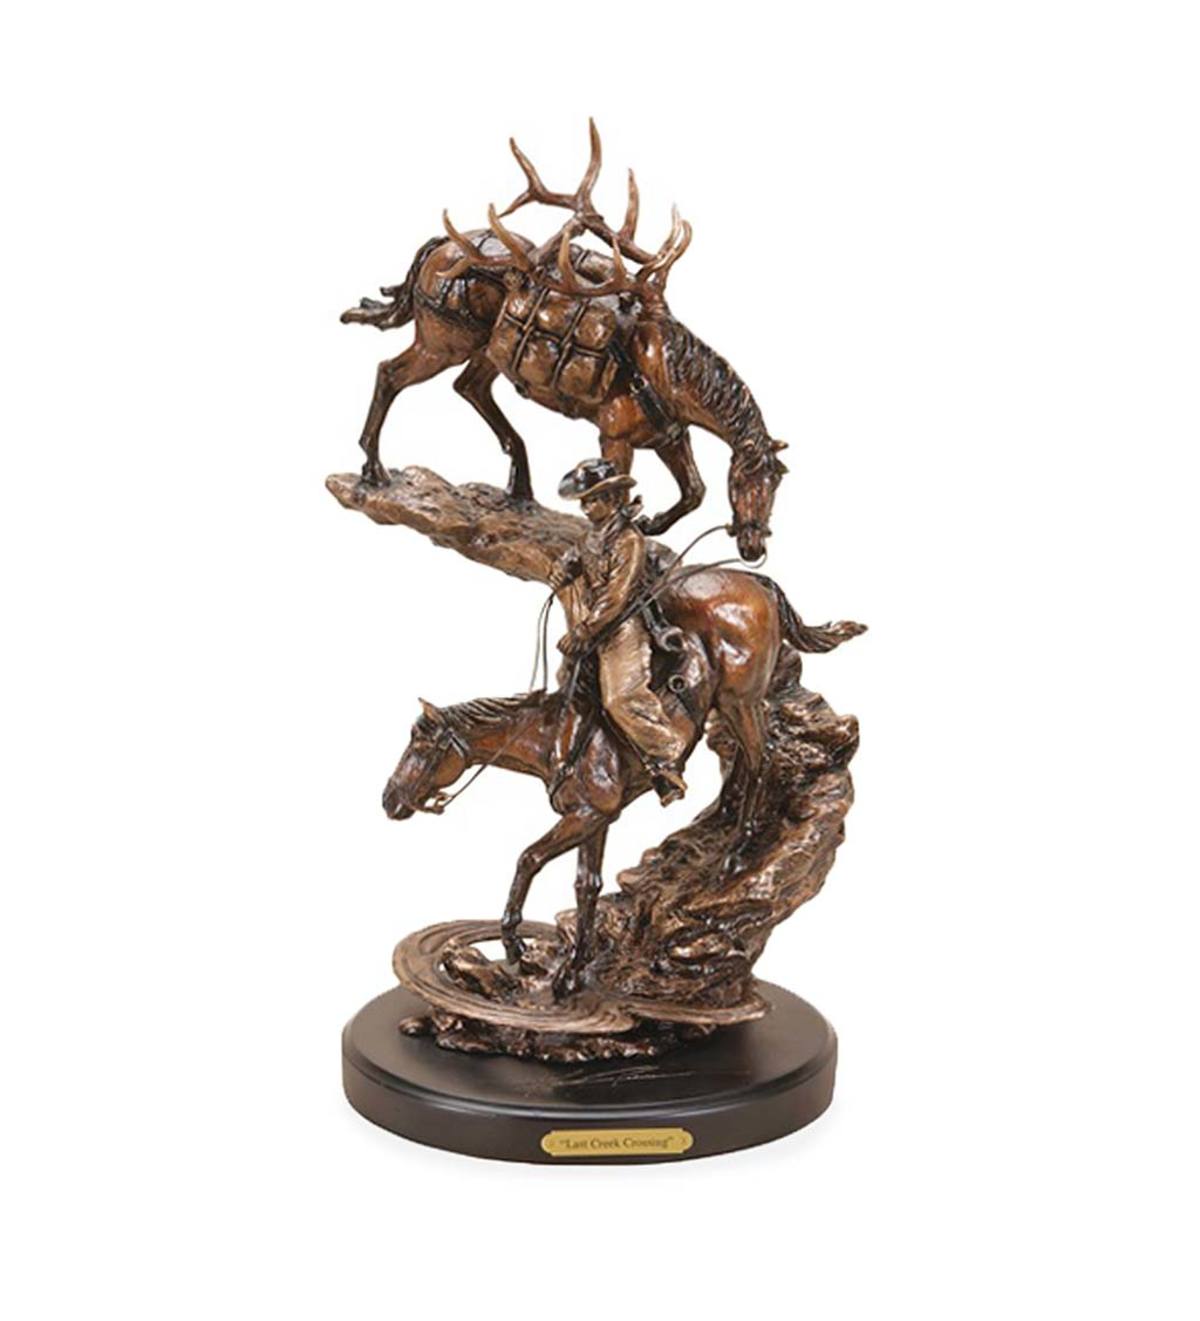 Bronze-Finish Cowboy and Horses Sculpture